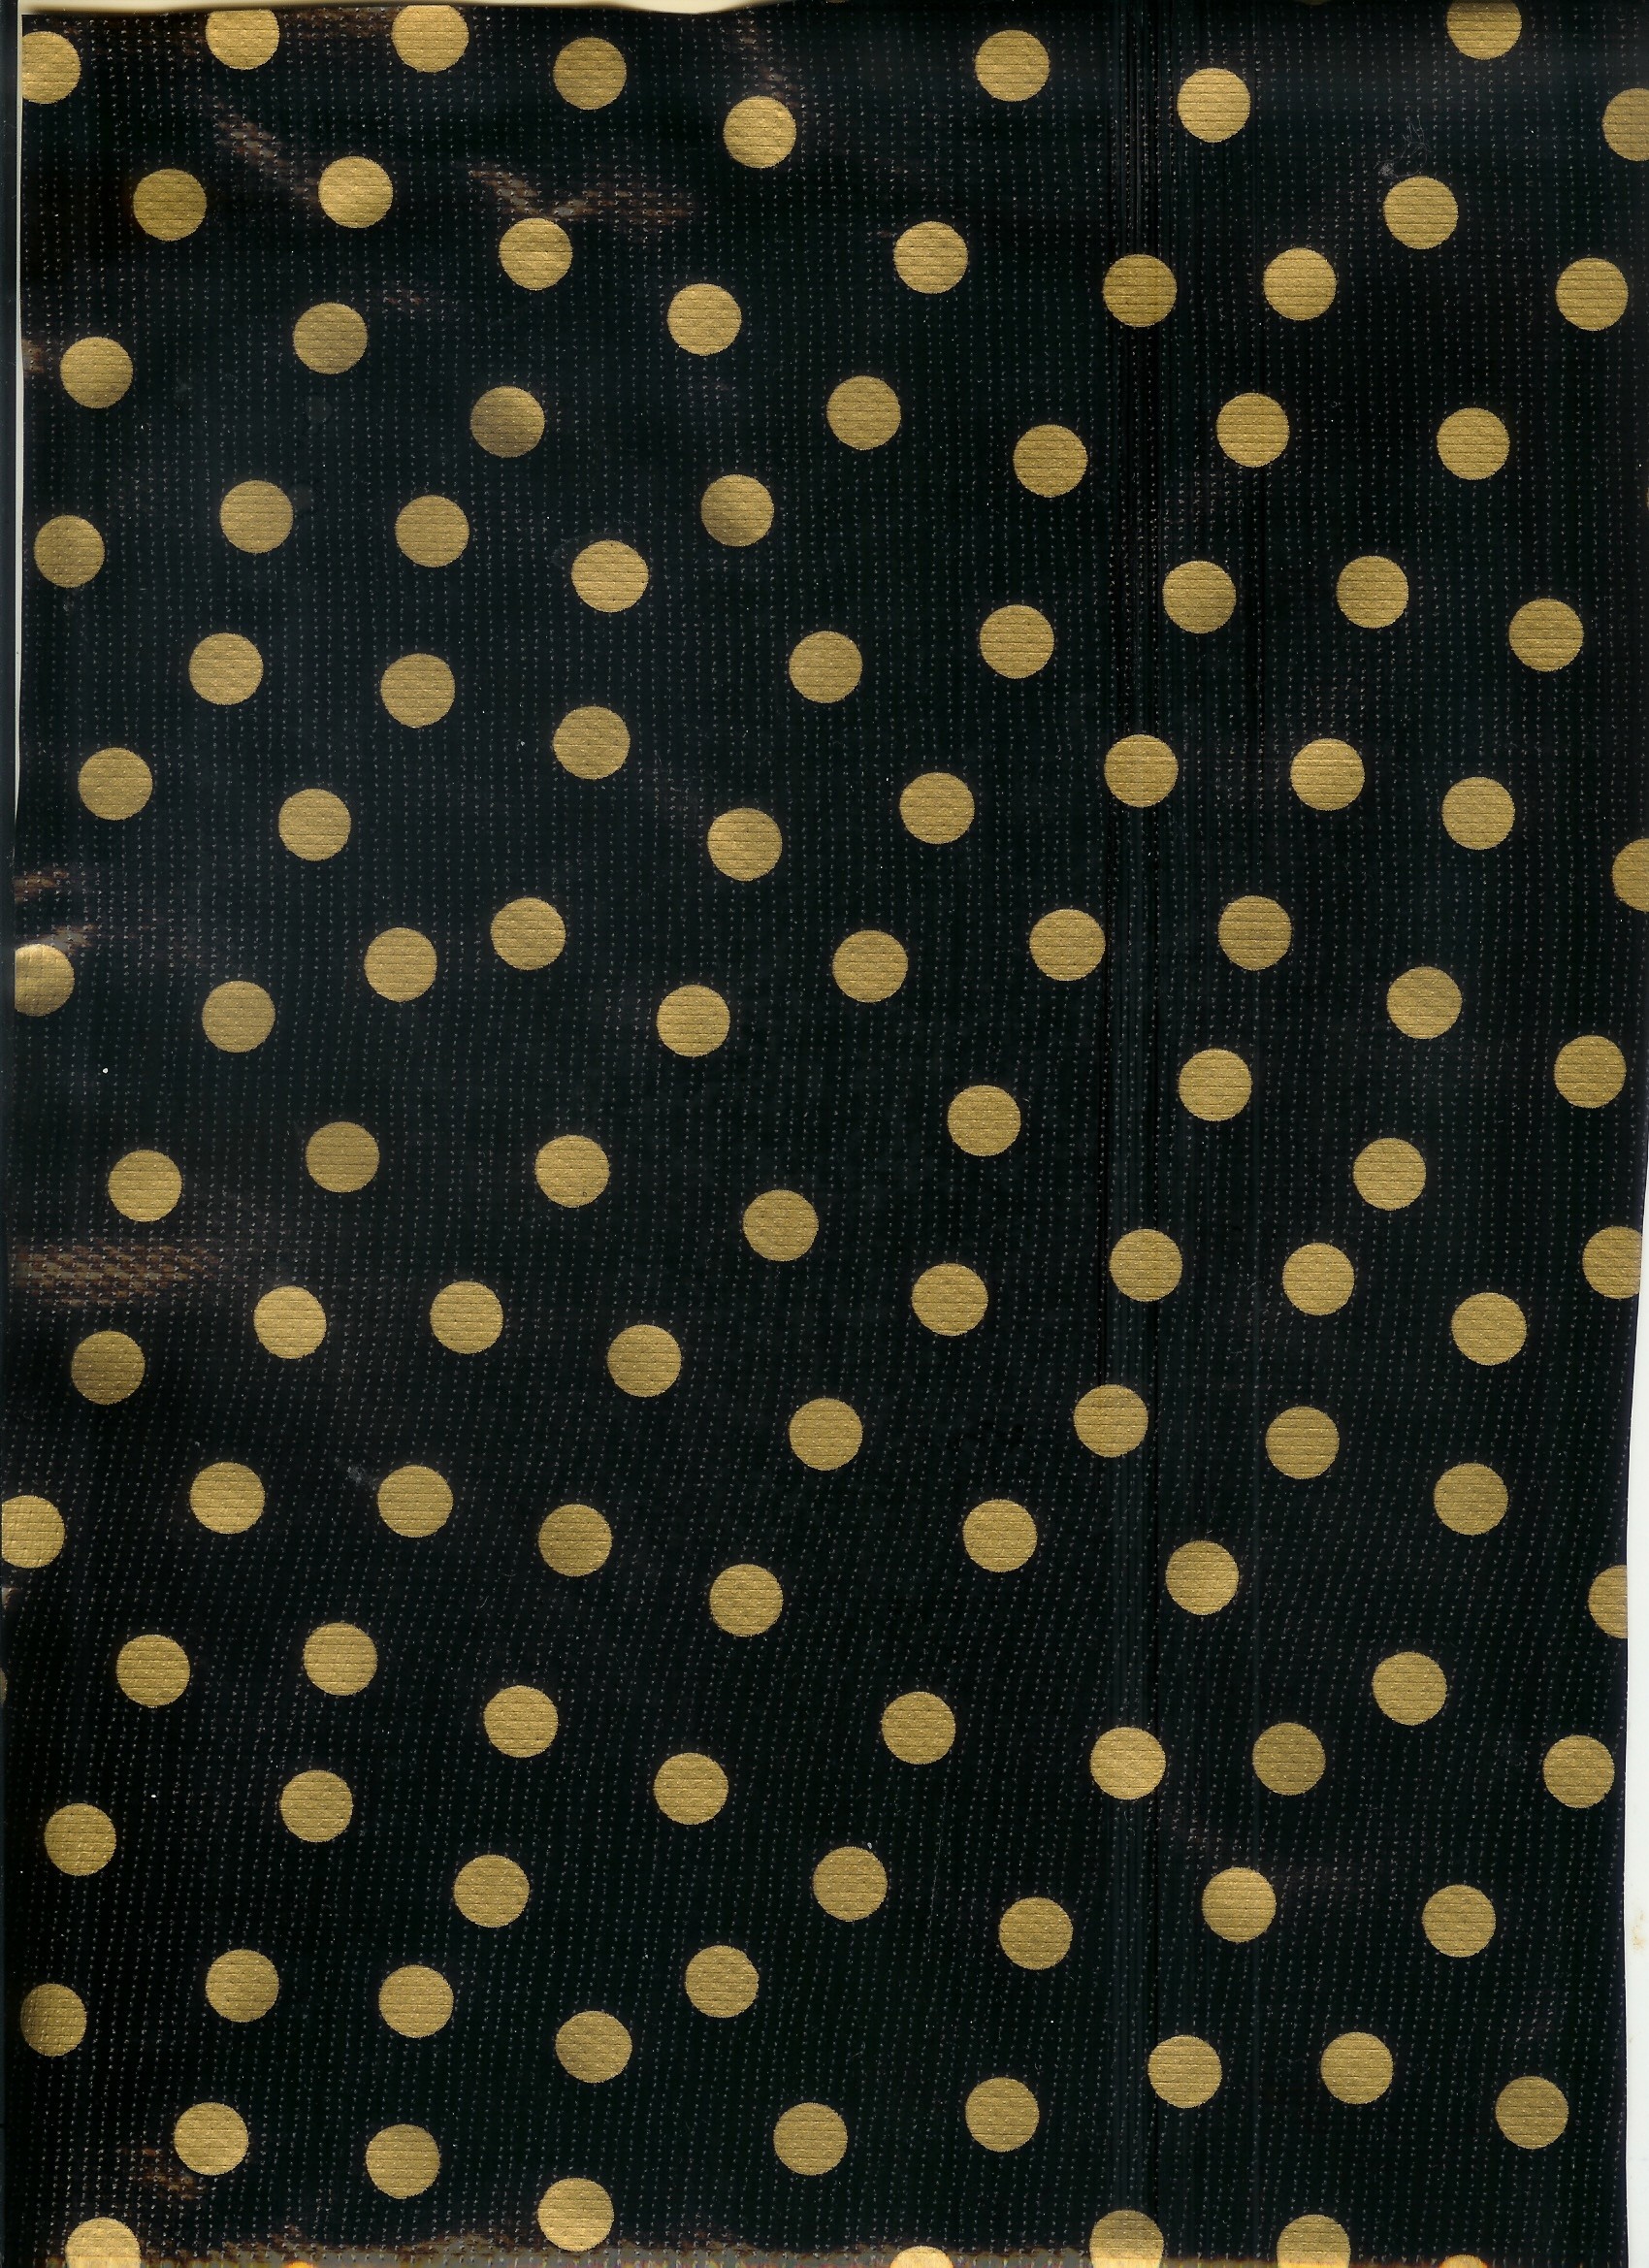 1700x2338 1920x1200 Gold Polka Dot Desktop Wallpaper White dots on black background